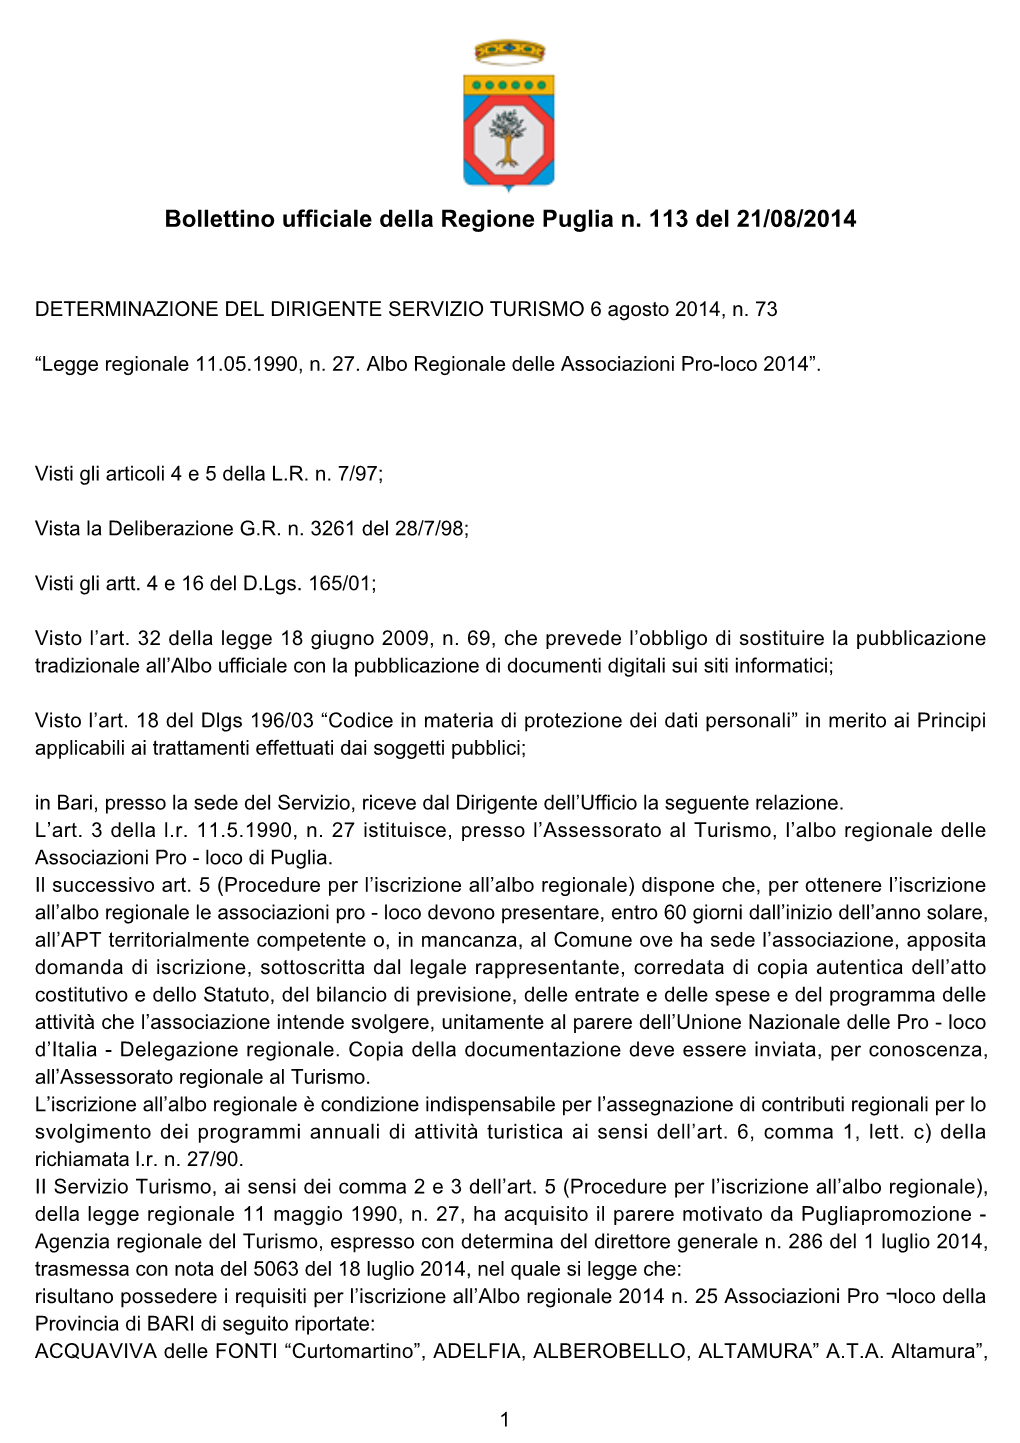 Bollettino Ufficiale Della Regione Puglia N. 113 Del 21/08/2014